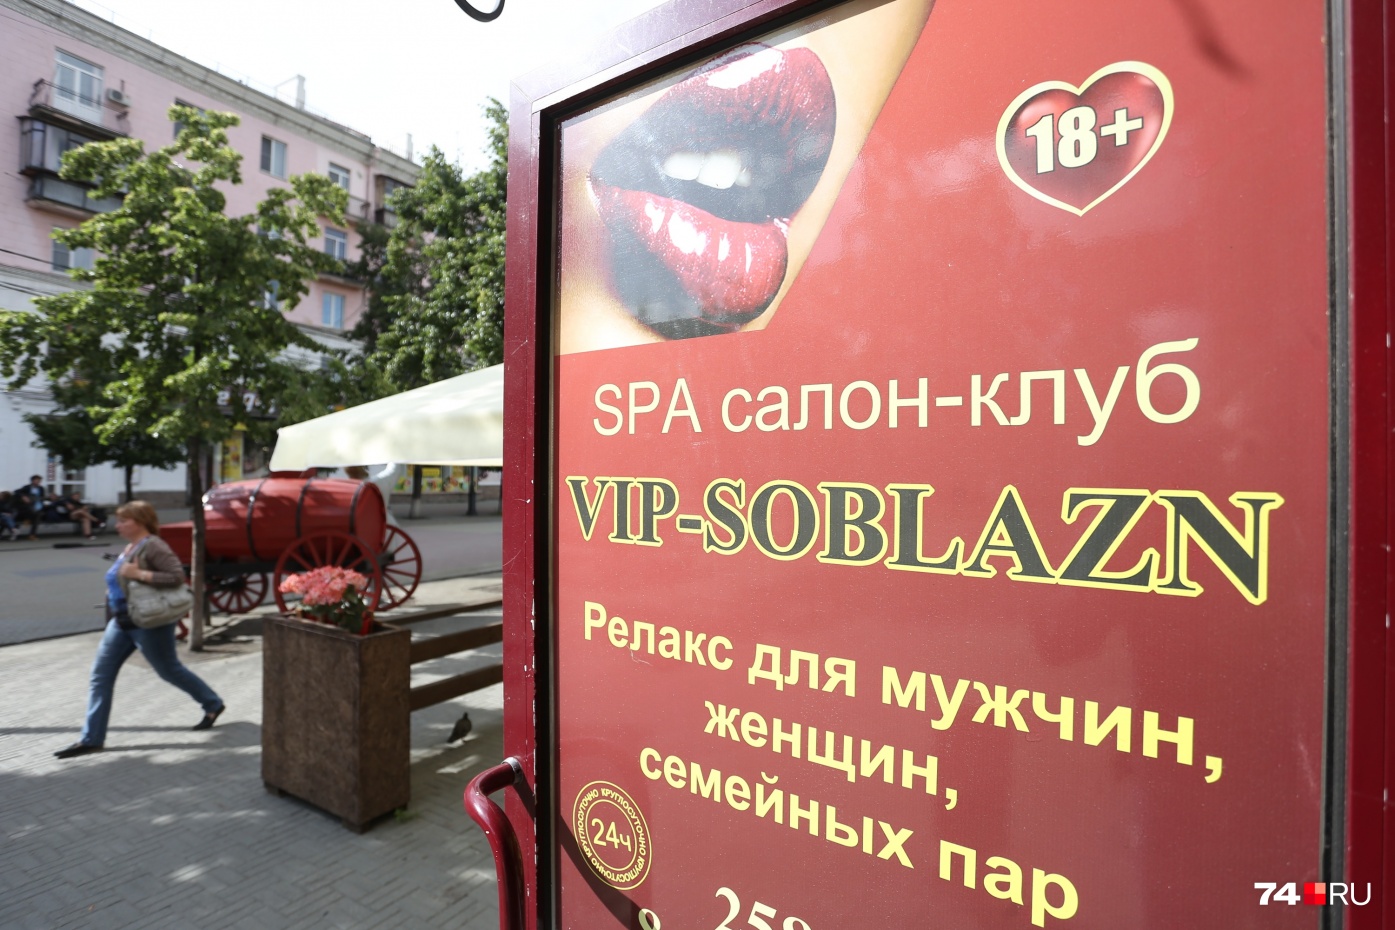 Рекламу салона размещали и на Кировке